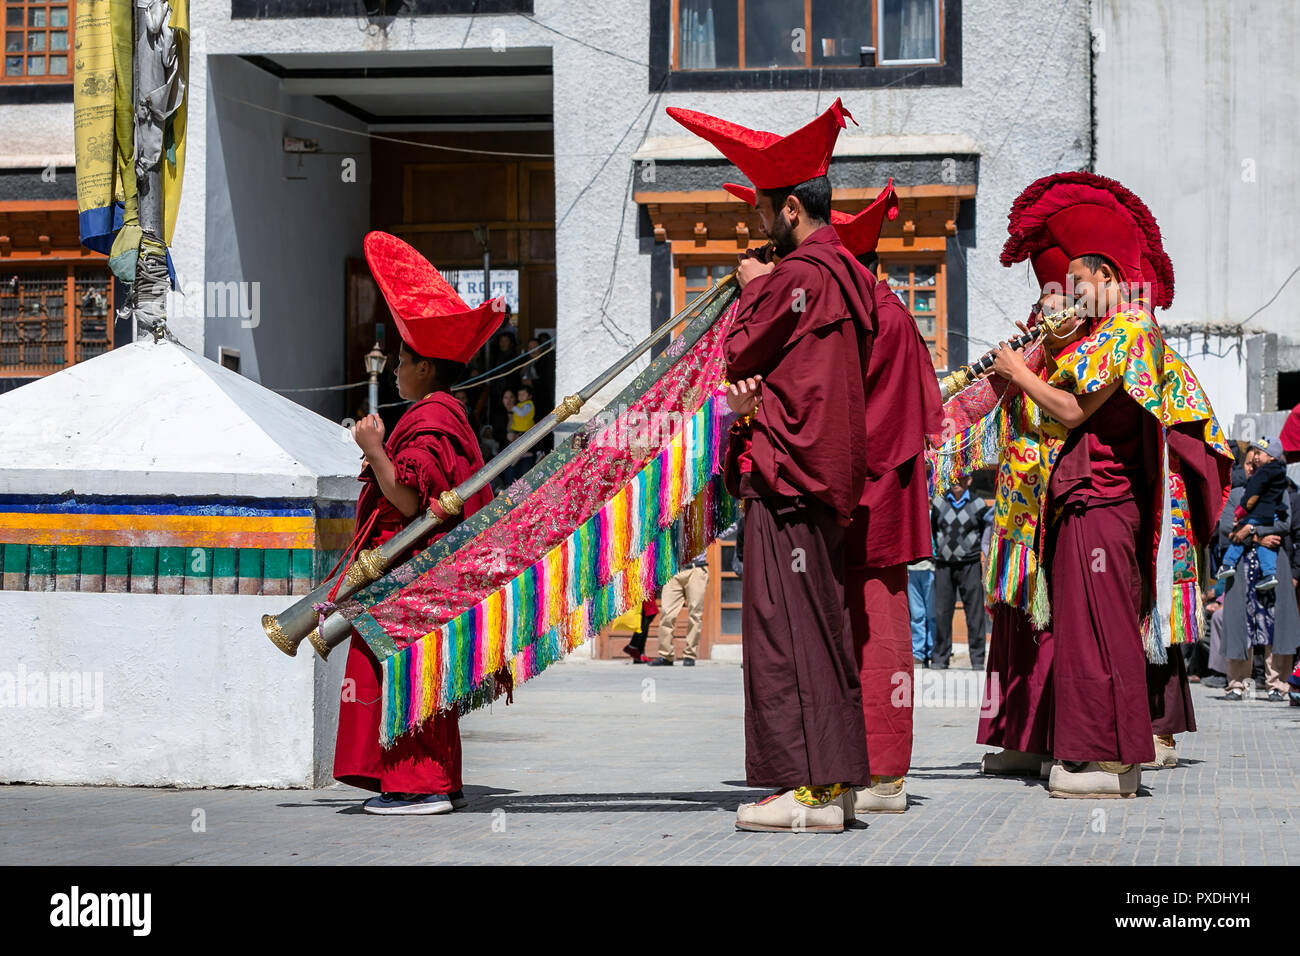 Moines bouddhistes jouant des instruments traditionnels, Temple Ladakh JO Khang, Leh, Ladakh, Inde Banque D'Images